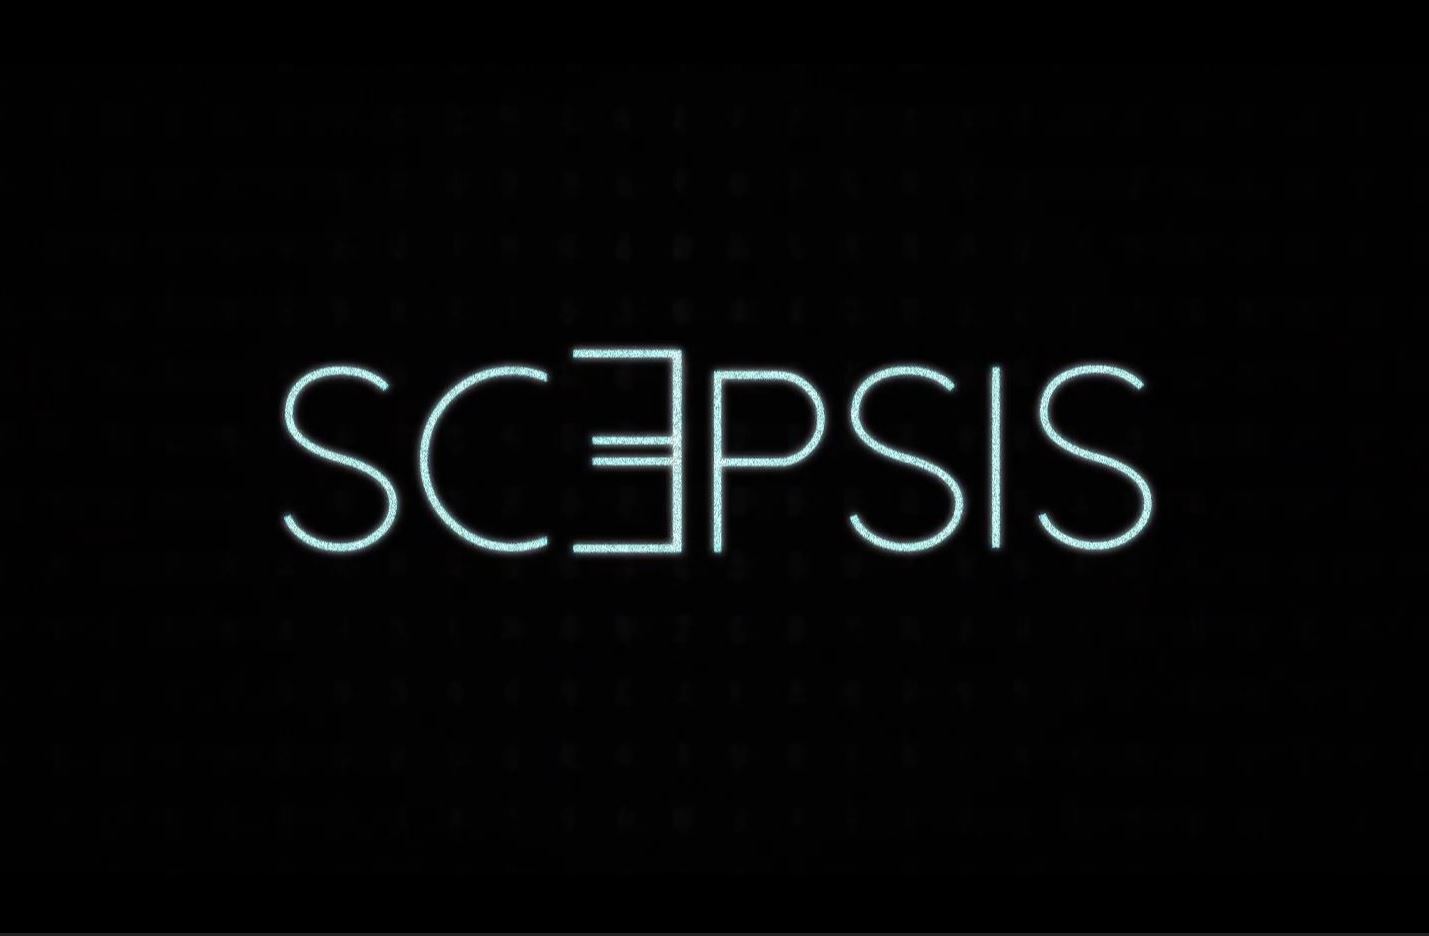 Scepsis – De scepticus is niet populair